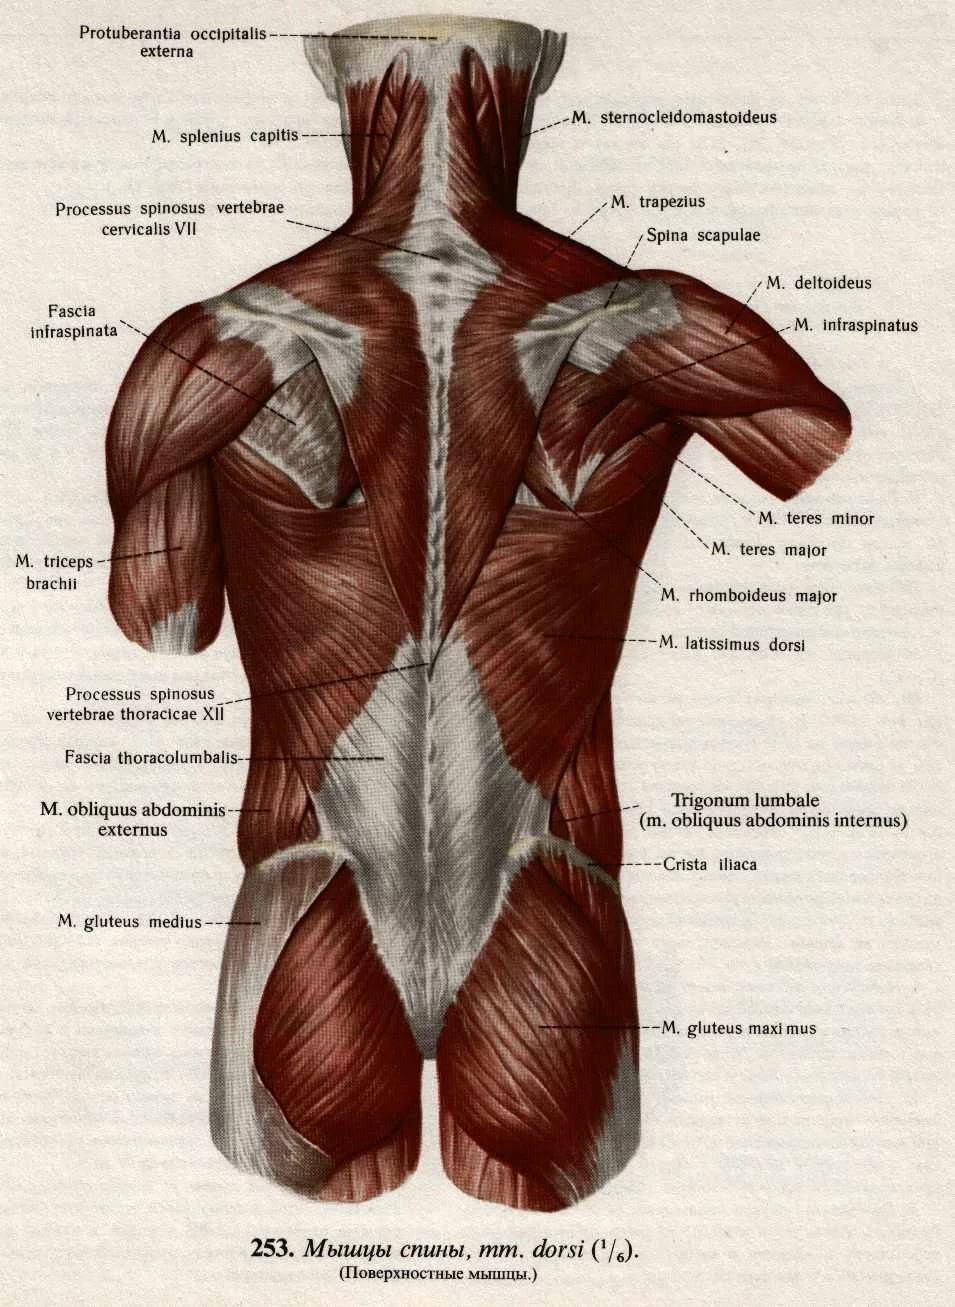 Мышцы спины человека фото мужчин